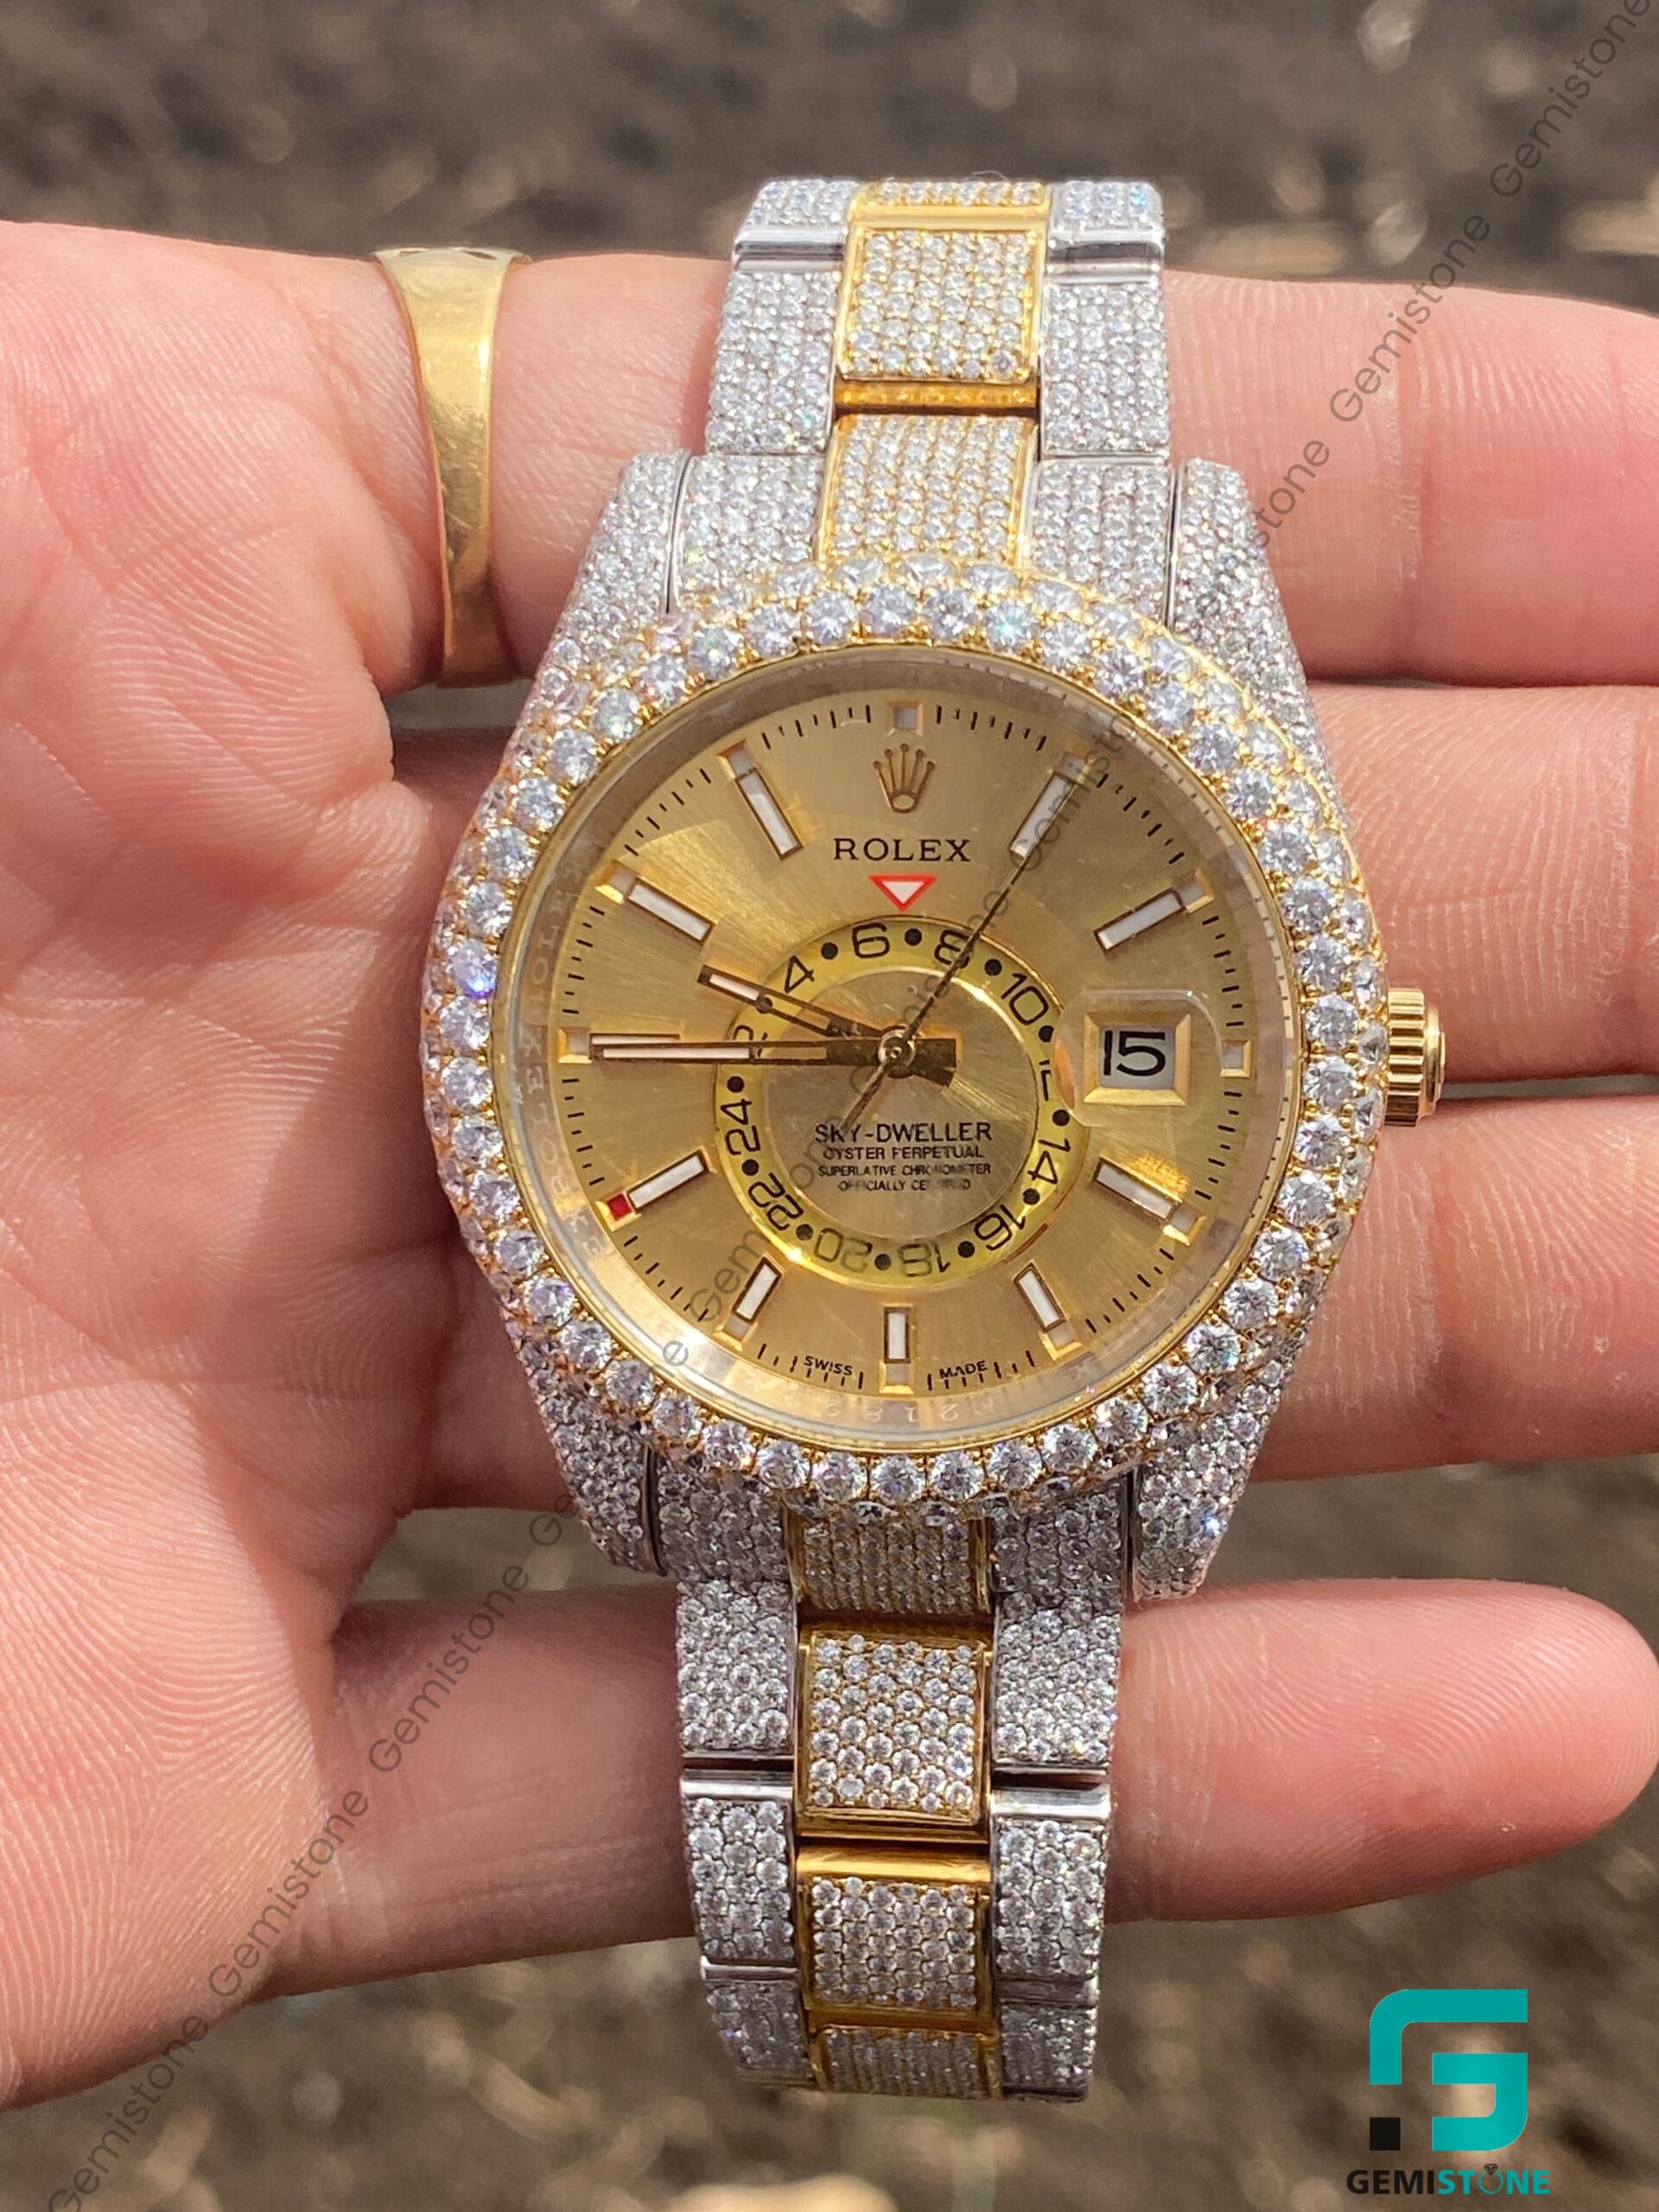 Rolex Sky Dweller Diamond Studded Watch Gemistone